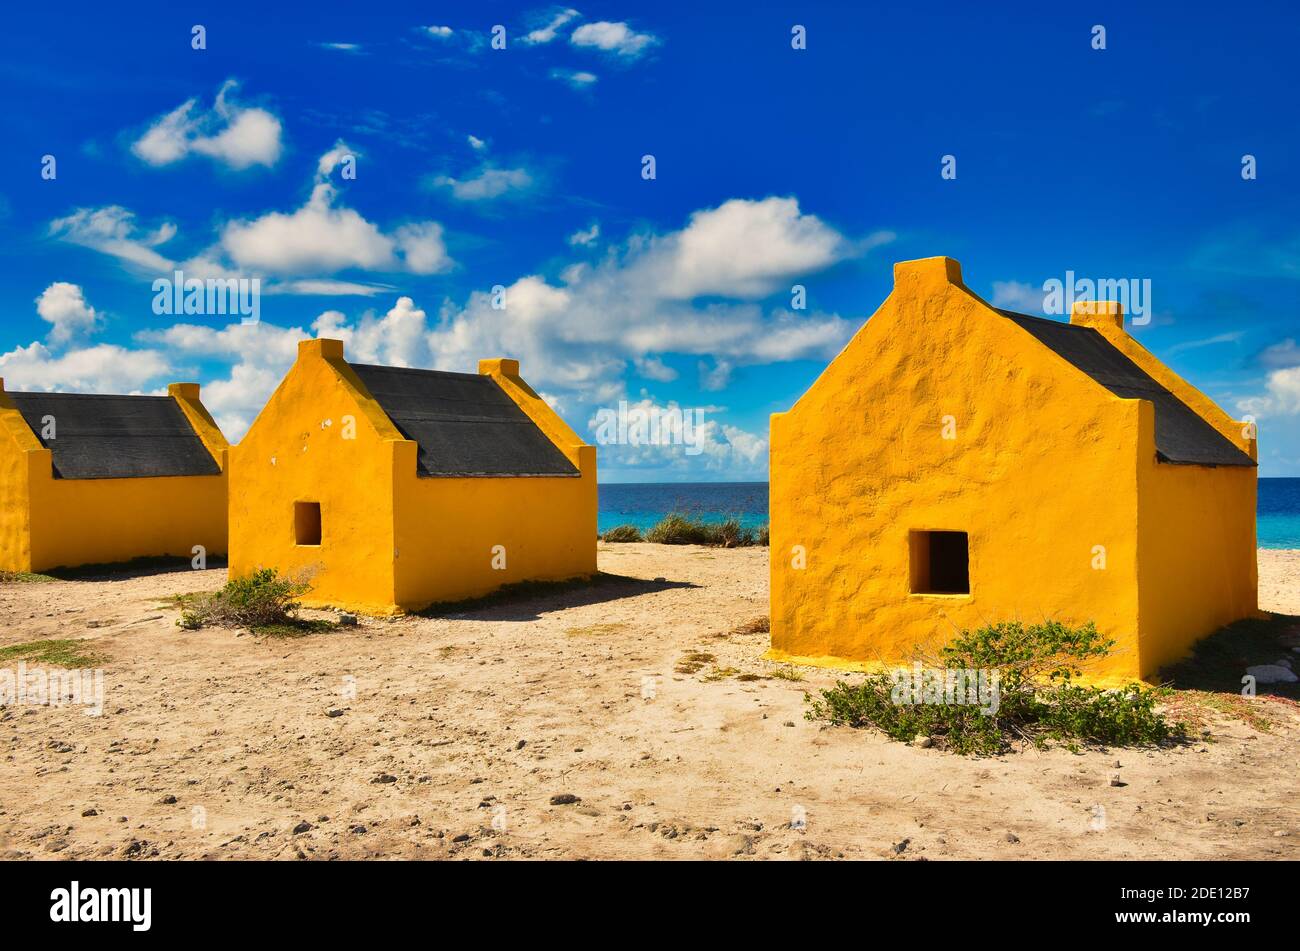 Case schiavi sulla spiaggia di Bonaire, Storia della schiavitù, isola caraibica nei Paesi Bassi atili Foto Stock